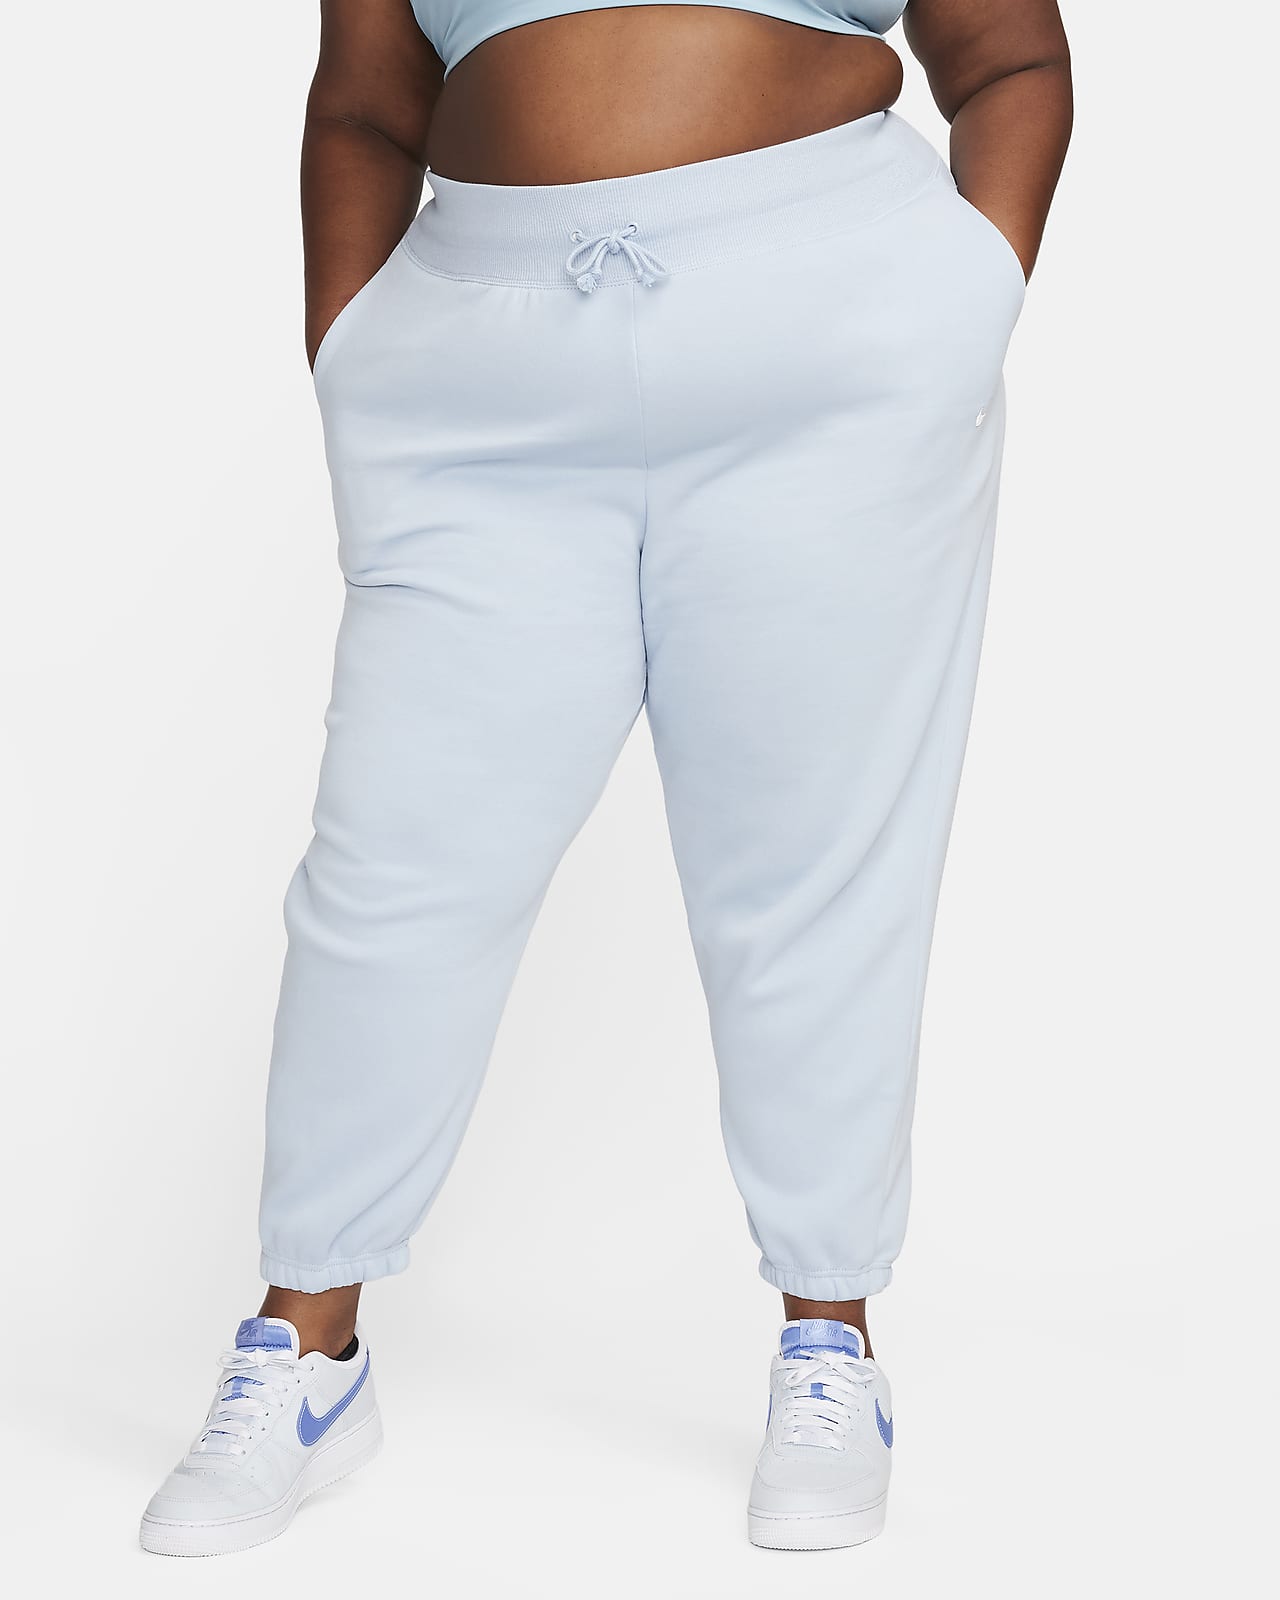 Nike Sportswear Phoenix Fleece Jogger de talle alto oversize (Talla grande) - Mujer